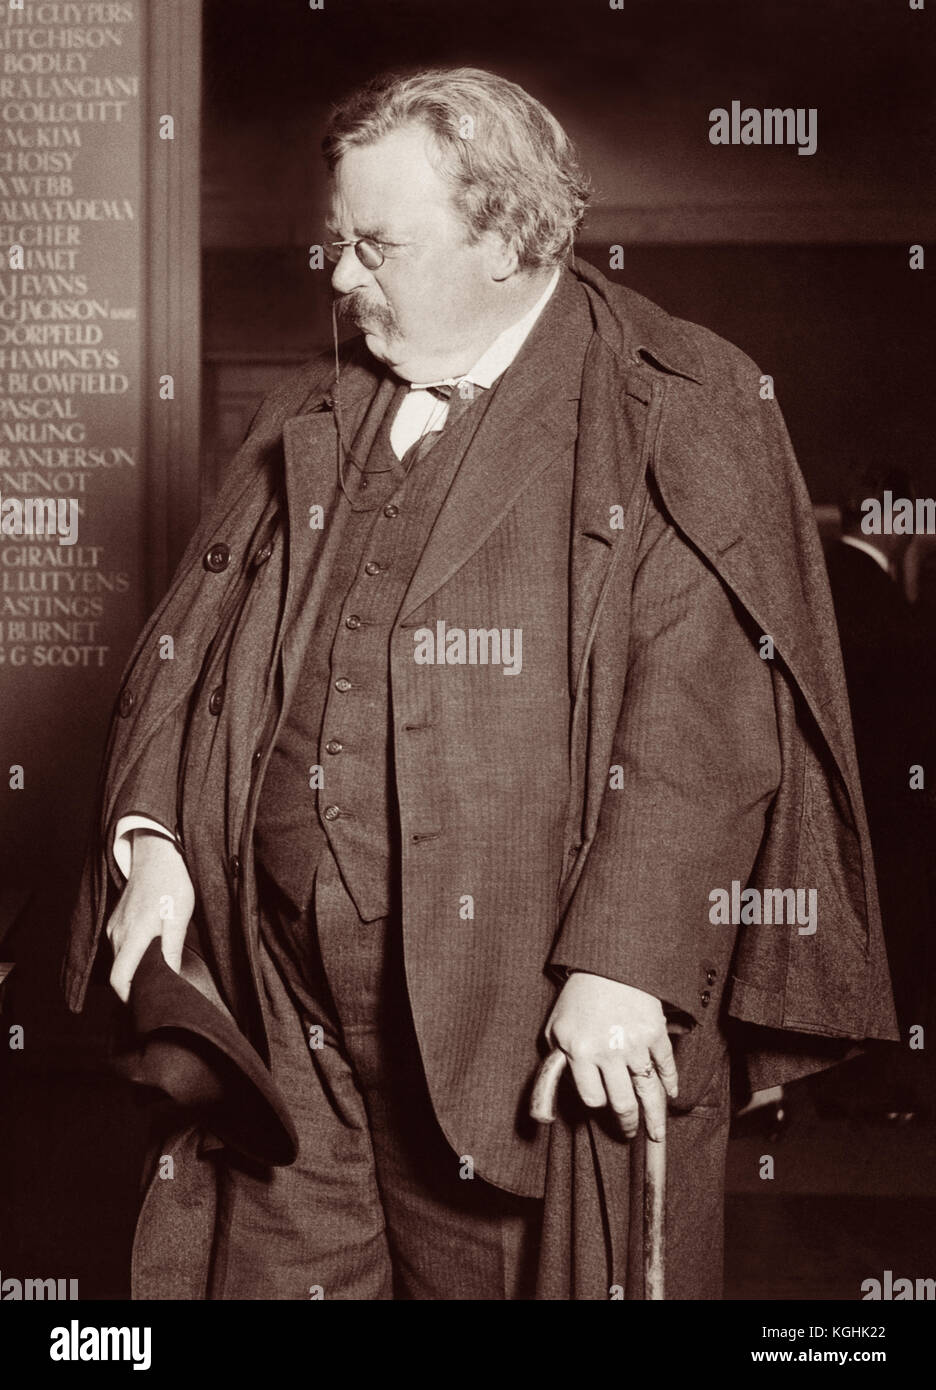 Gilbert Keith Chesterton (1874 - 1936), bekannt als G.K. Chesterton, 1925 mit charakteristischem zerknittertem Hut, Umhang und Stock (Schwertstab). Chesterton war ein englischer Schriftsteller, Philosoph, Dramatiker, Dichter, Journalist, Redner, Laientheologe, Biograph, christlicher Apologe, Literatur- und Kunstkritiker. Er ist vor allem bekannt für Werke wie die Orthodoxie (1908), die Geschichten von Pater Brown (1910-1935), der ewige Mann (1925), der Mann, der Donnerstag war (1908) und der Napoleon von Notting Hill (1904). Stockfoto